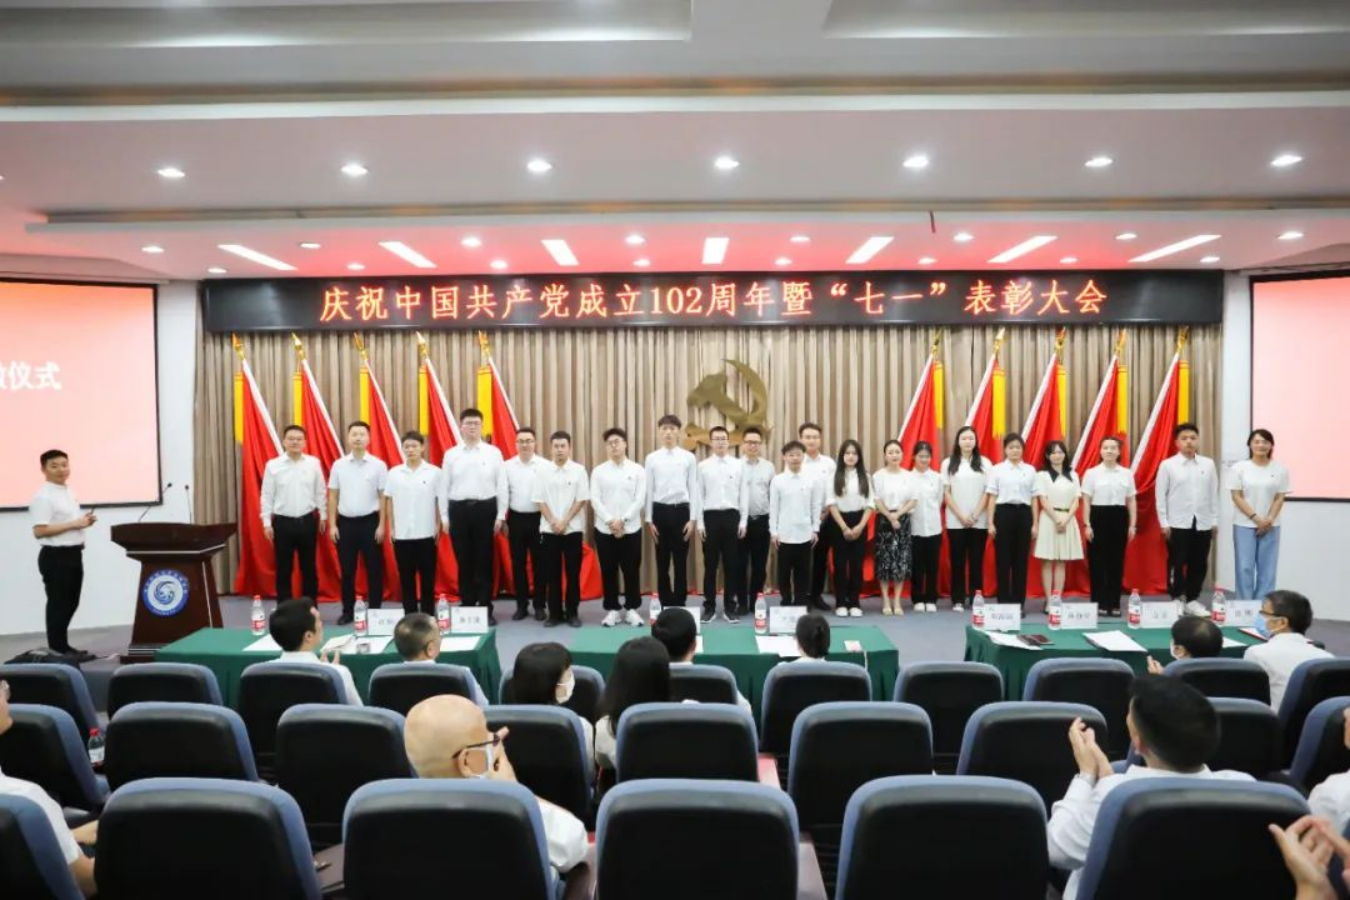 我校隆重召開慶祝中國共產黨成立102周年暨“七一”表彰大會